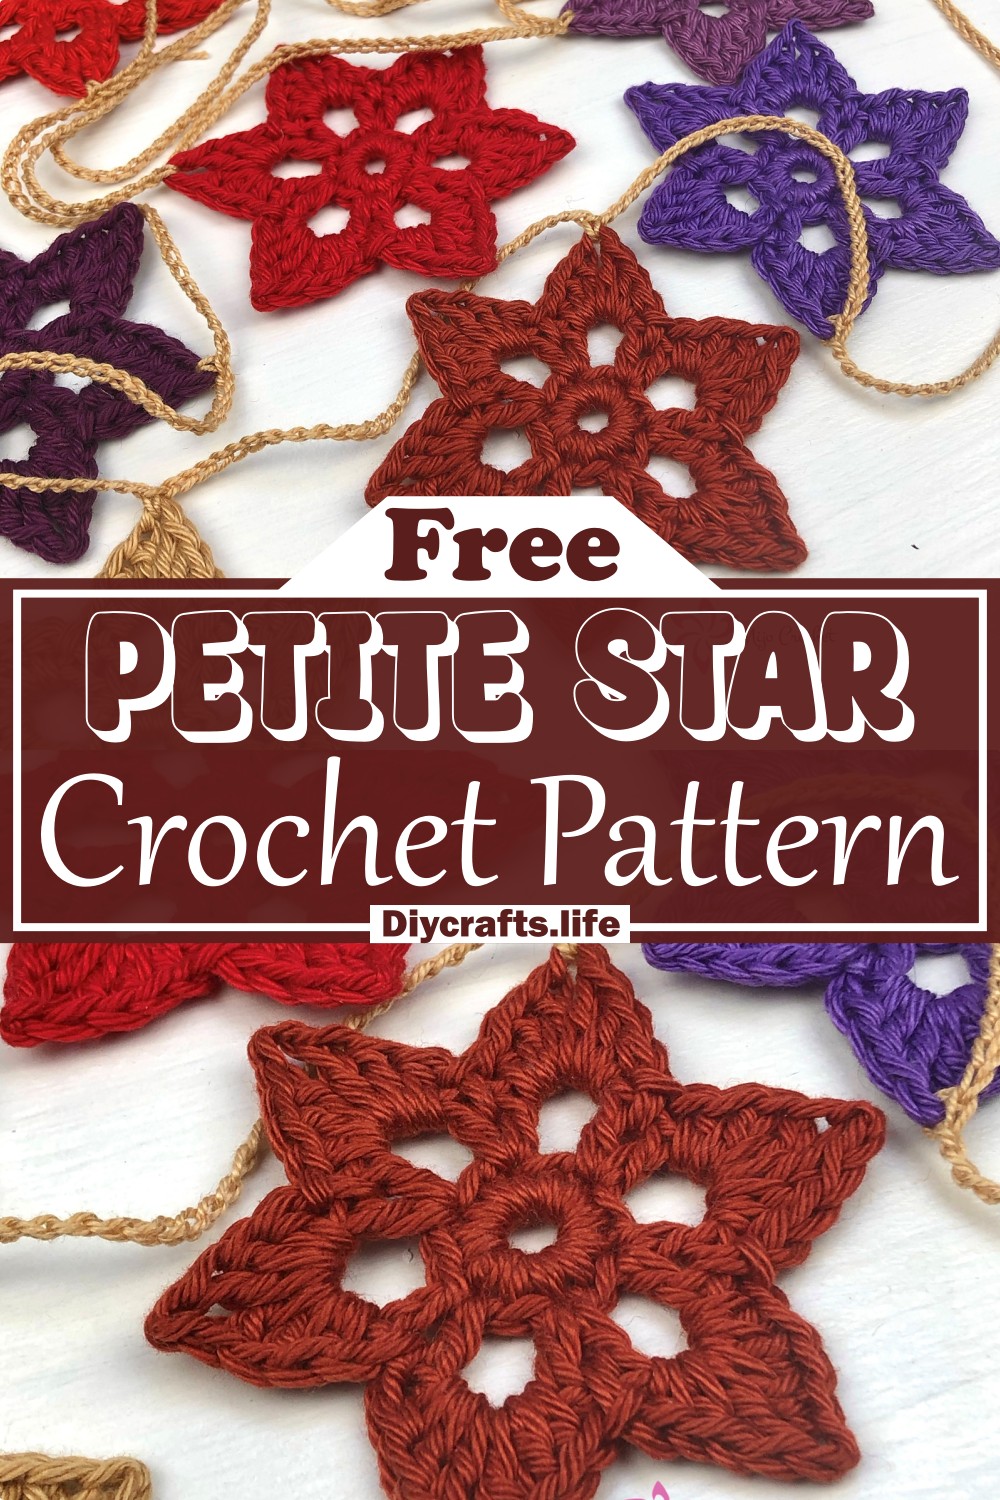 Crochet Petite Star Pattern